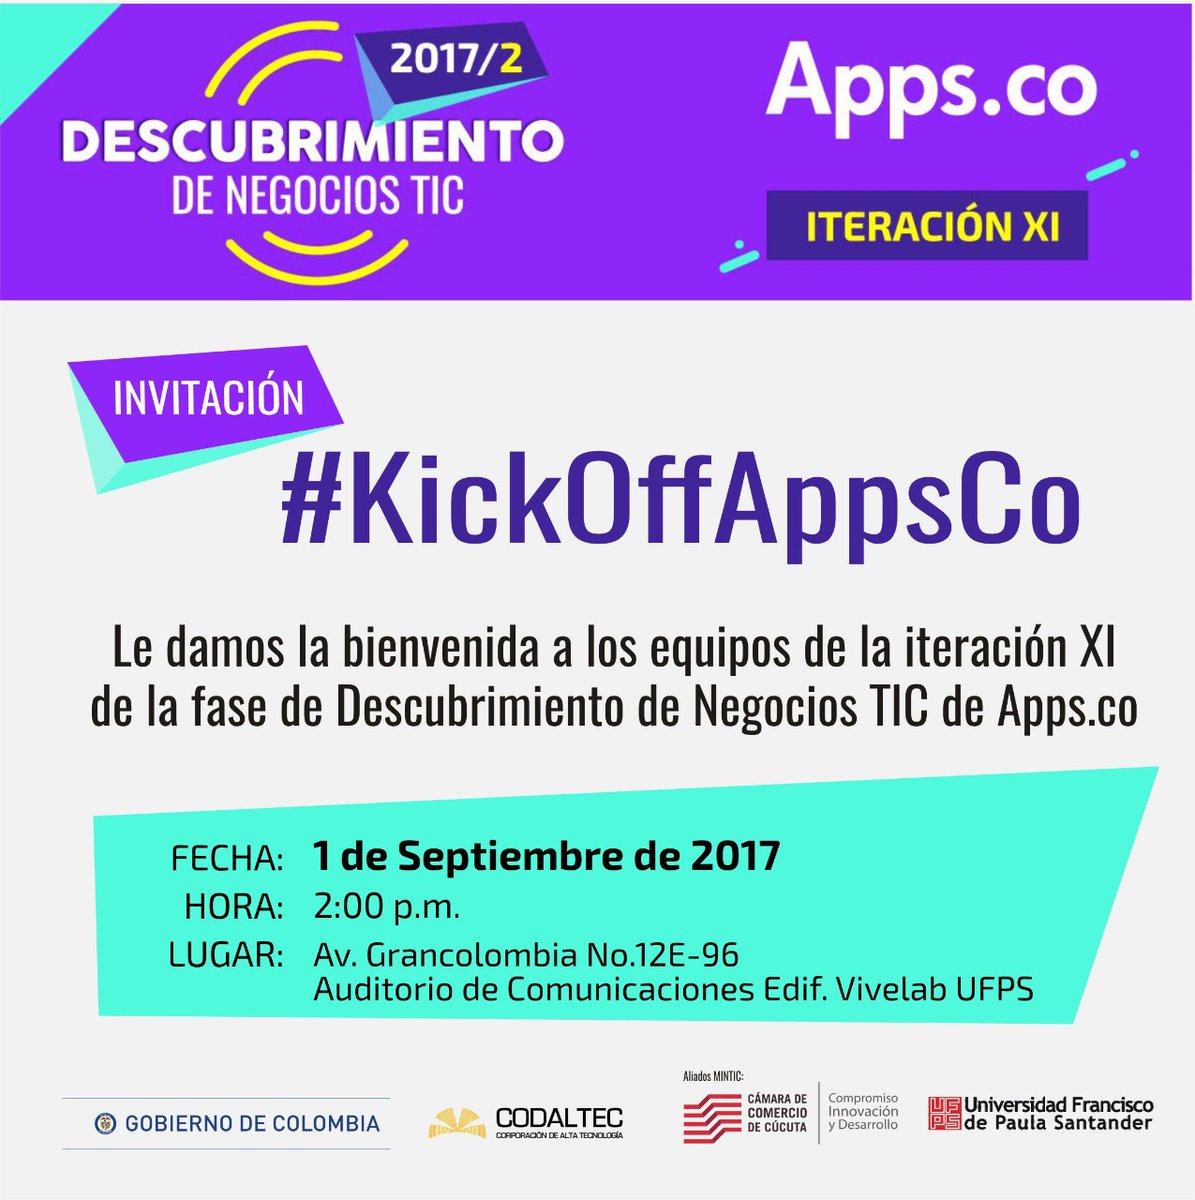 En el Kick Off de Apps.co le damos la bienvenida a los equipos de emprendedores de la fase de Descubrimiento de Negocios TIC